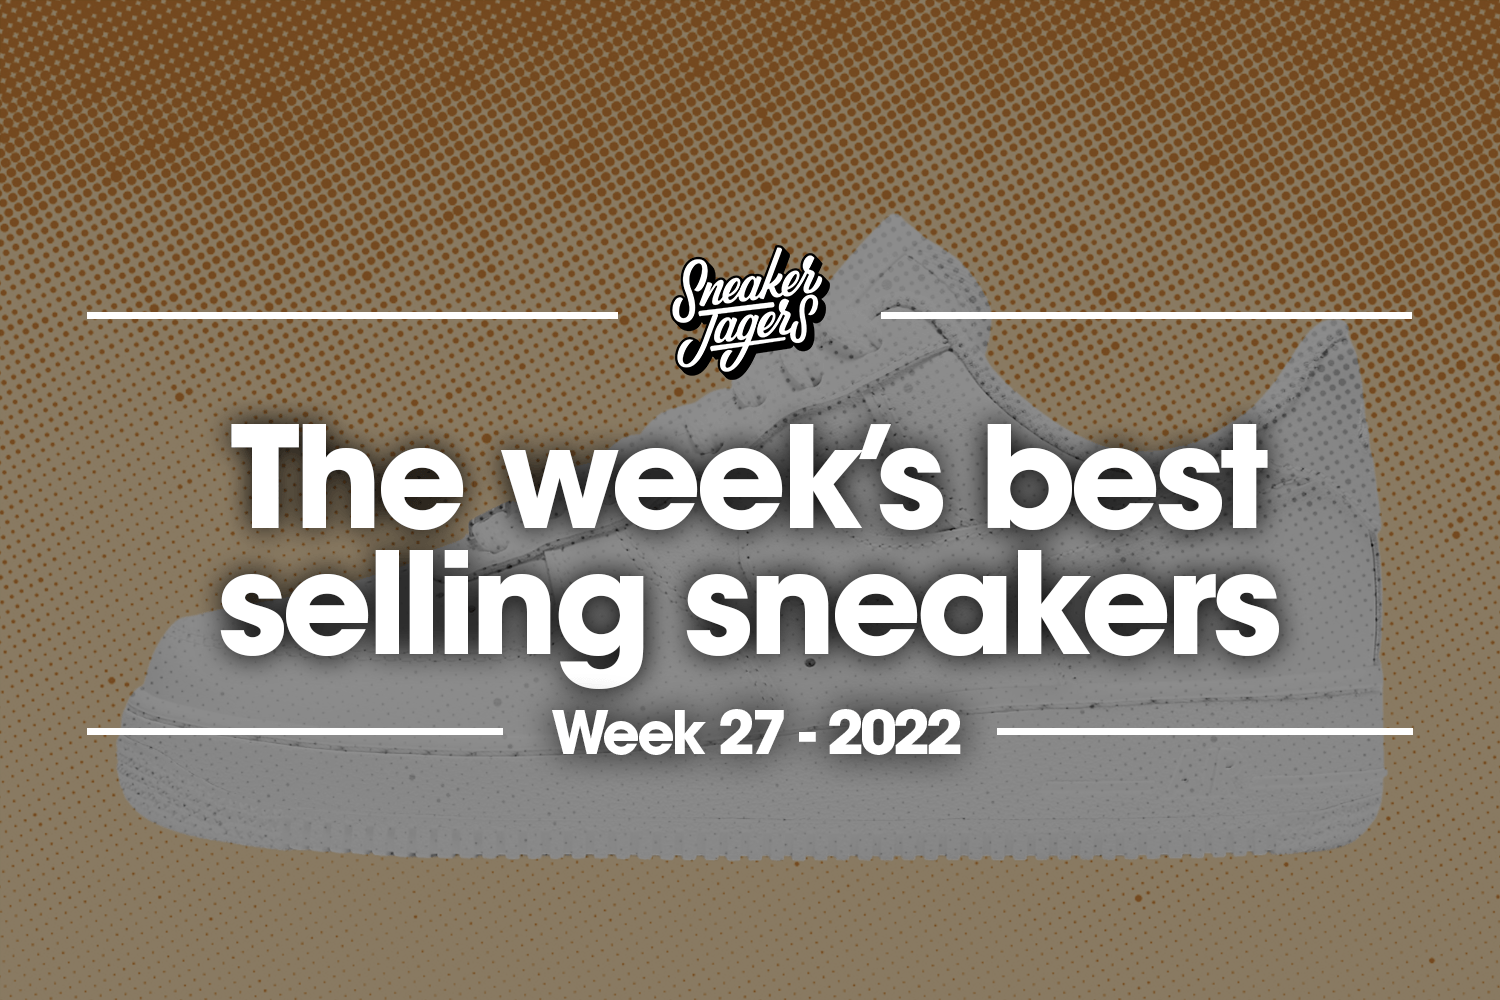 De 5 bestverkochte sneakers van week 27